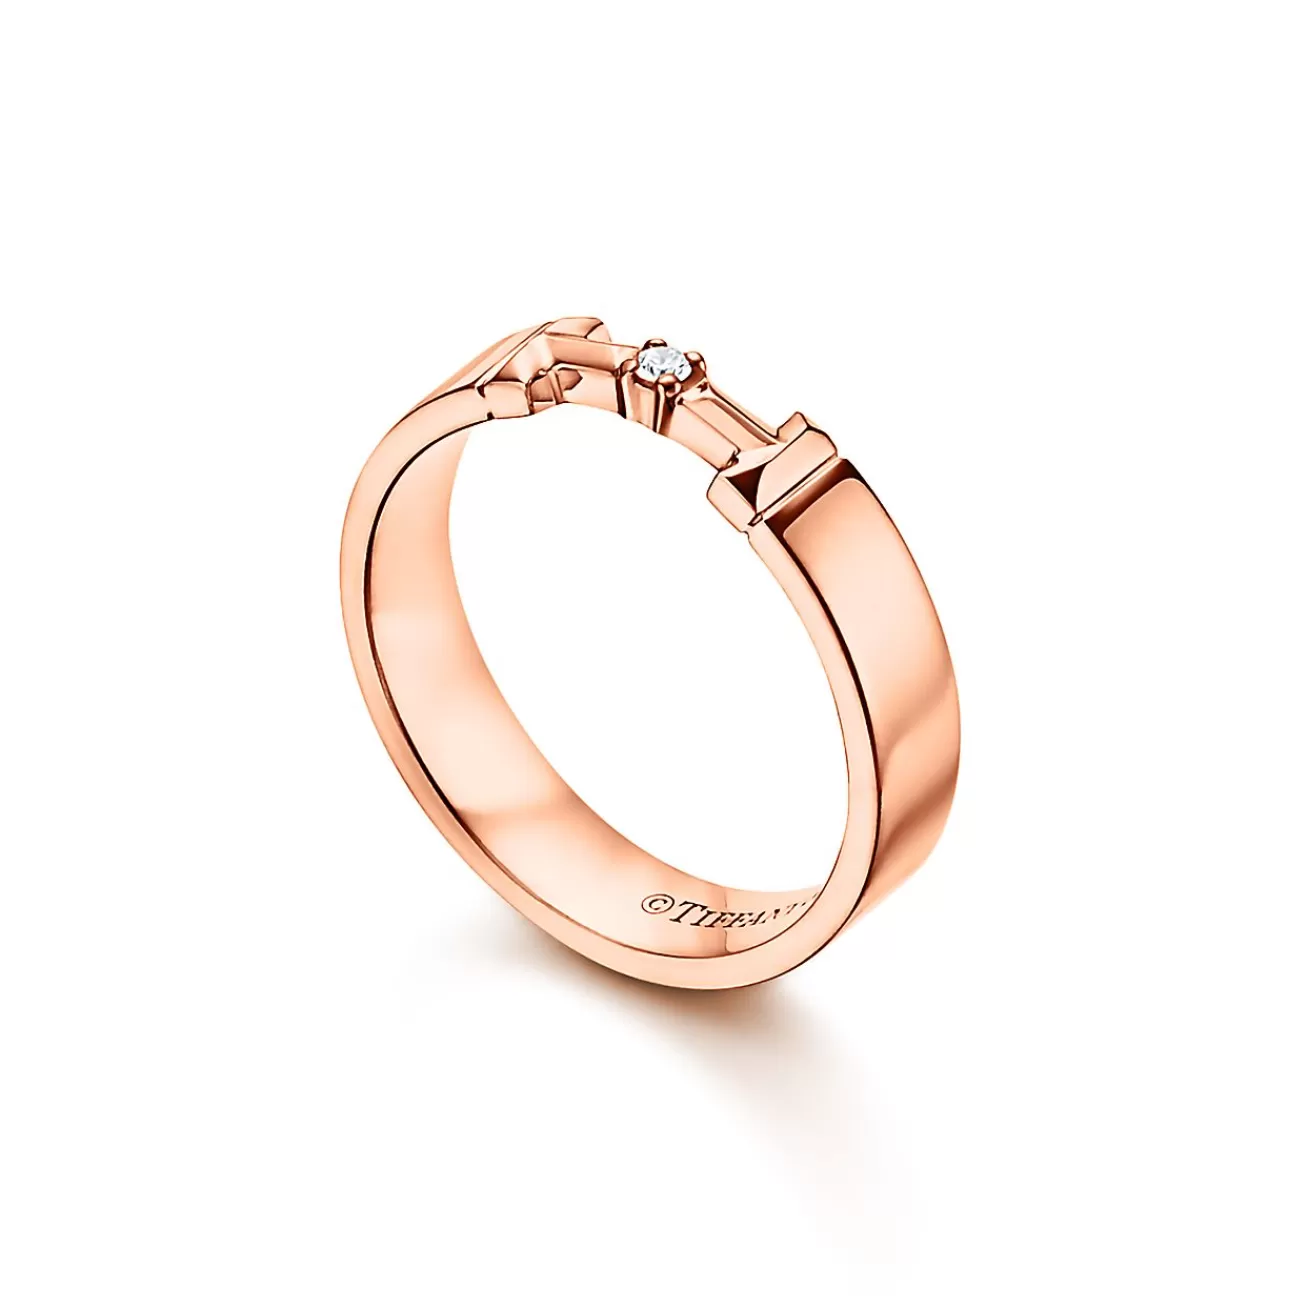 Tiffany & Co. Tiffany T True diamond link ring in 18k rose gold, 4 mm wide. | ^ Rings | Men's Jewelry